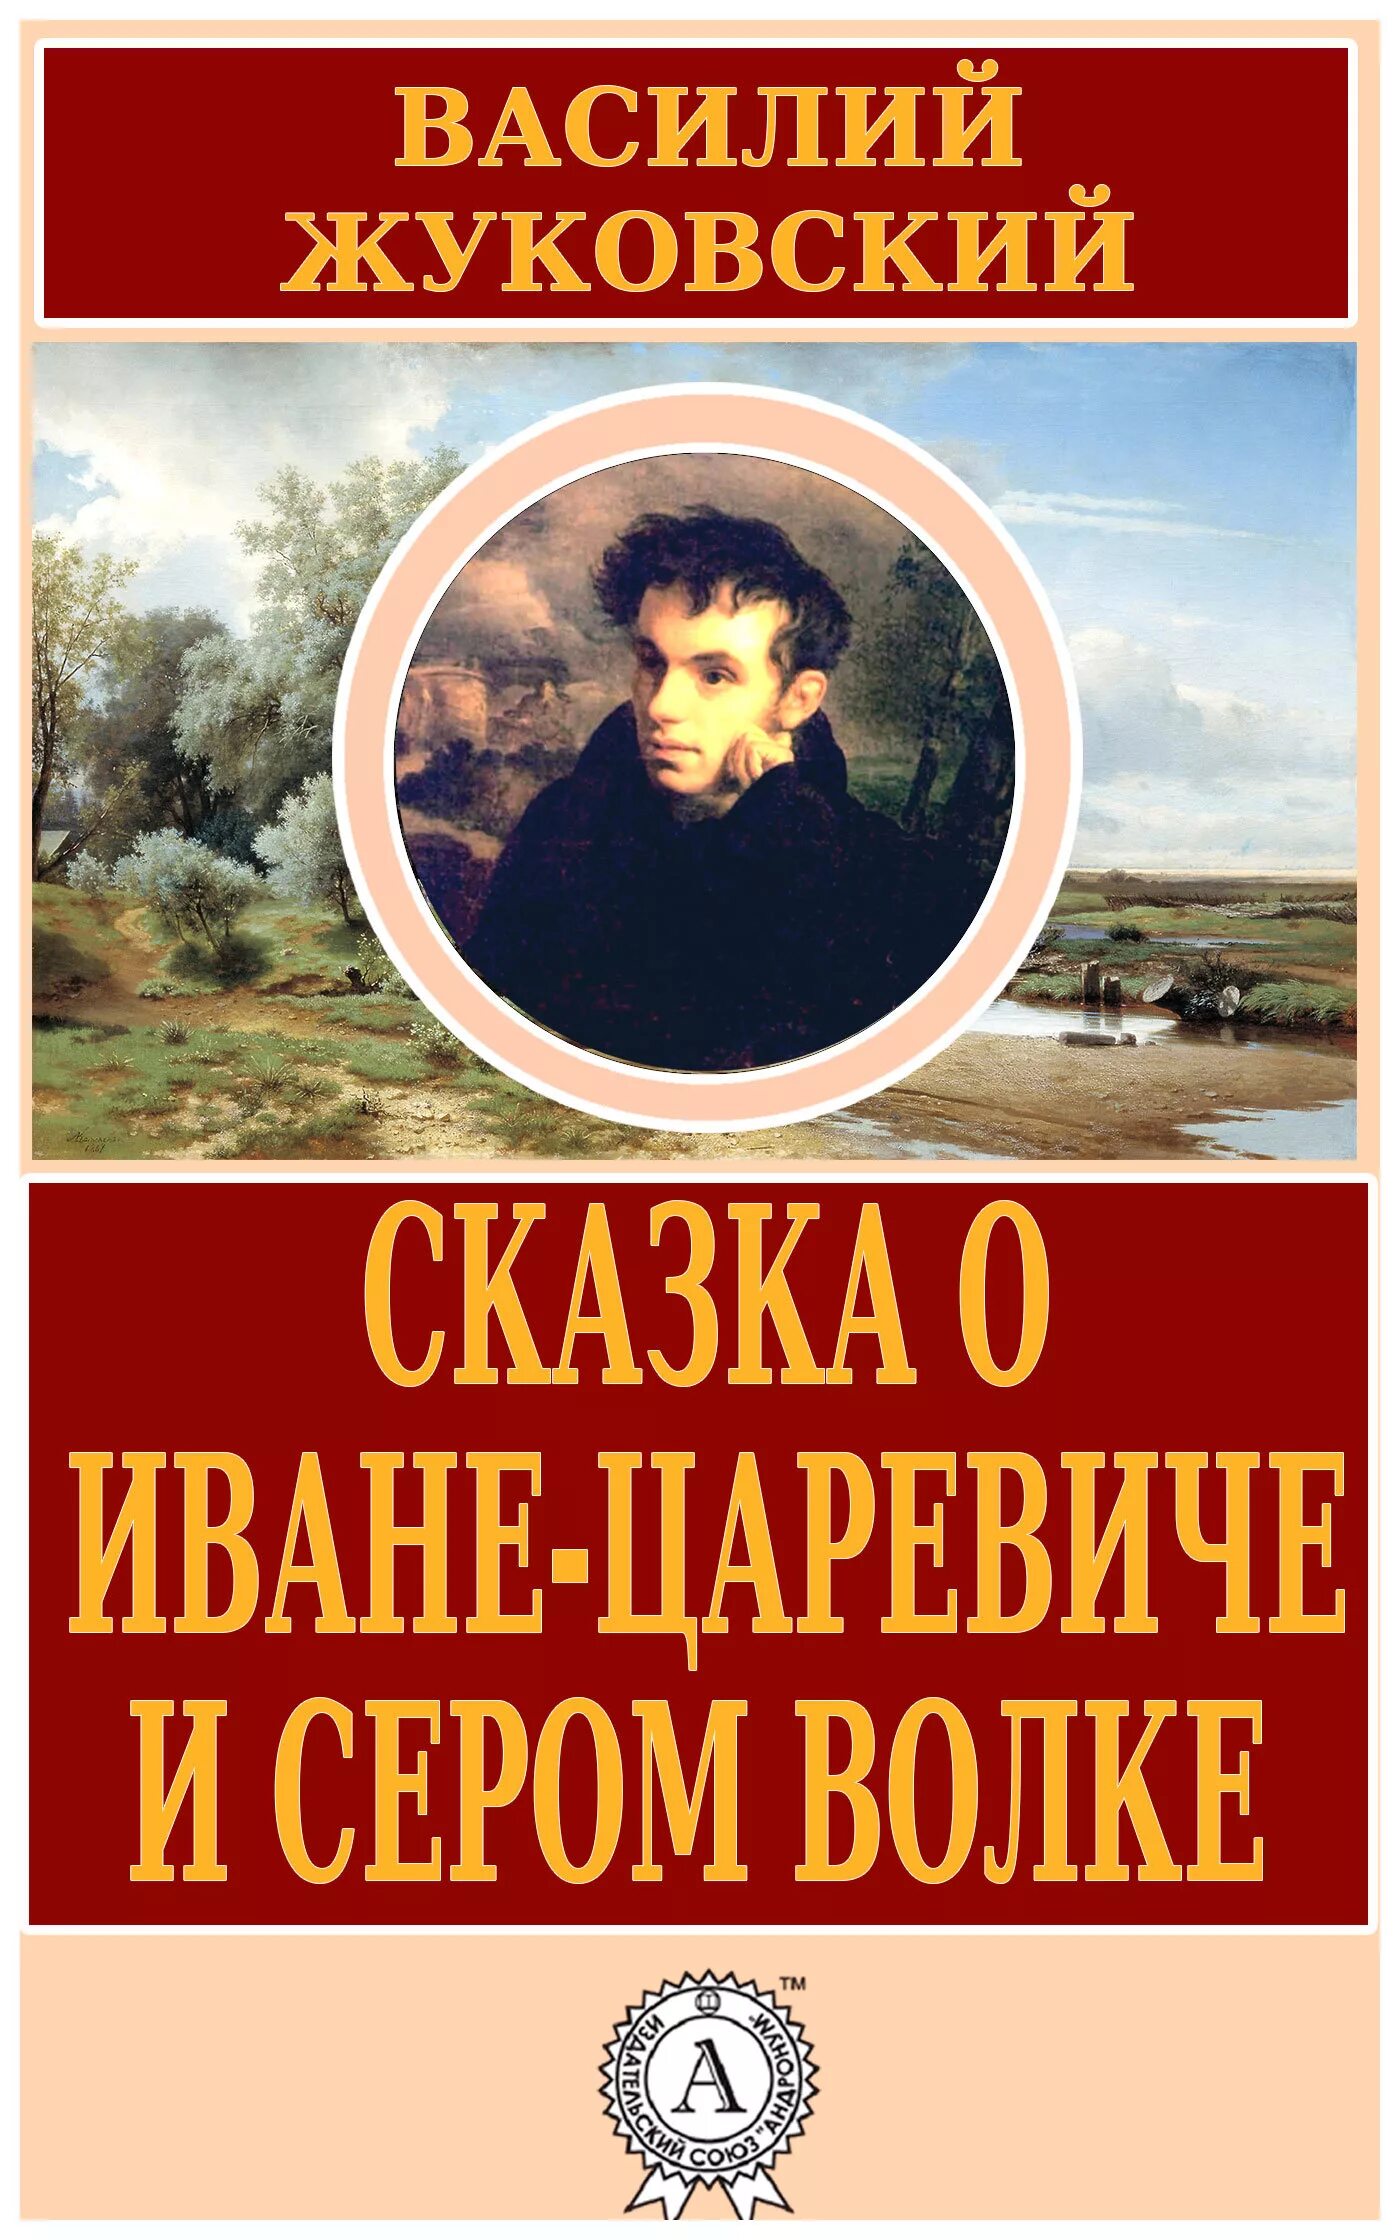 Жуковский написал произведение. Книги Жуковского Василия Андреевича.